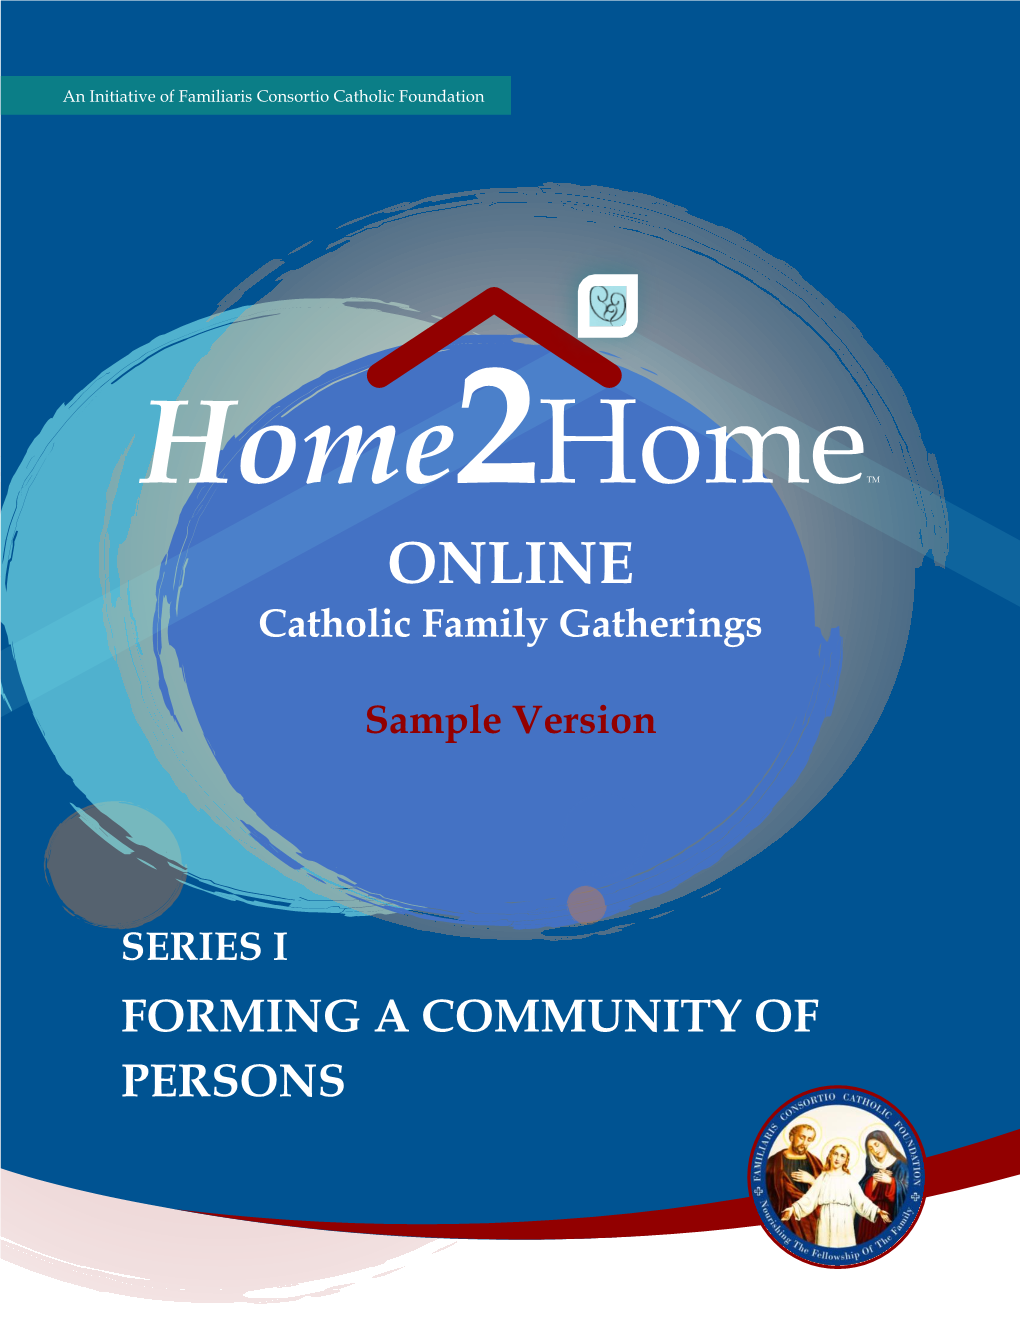 ONLINE Catholic Family Gatherings